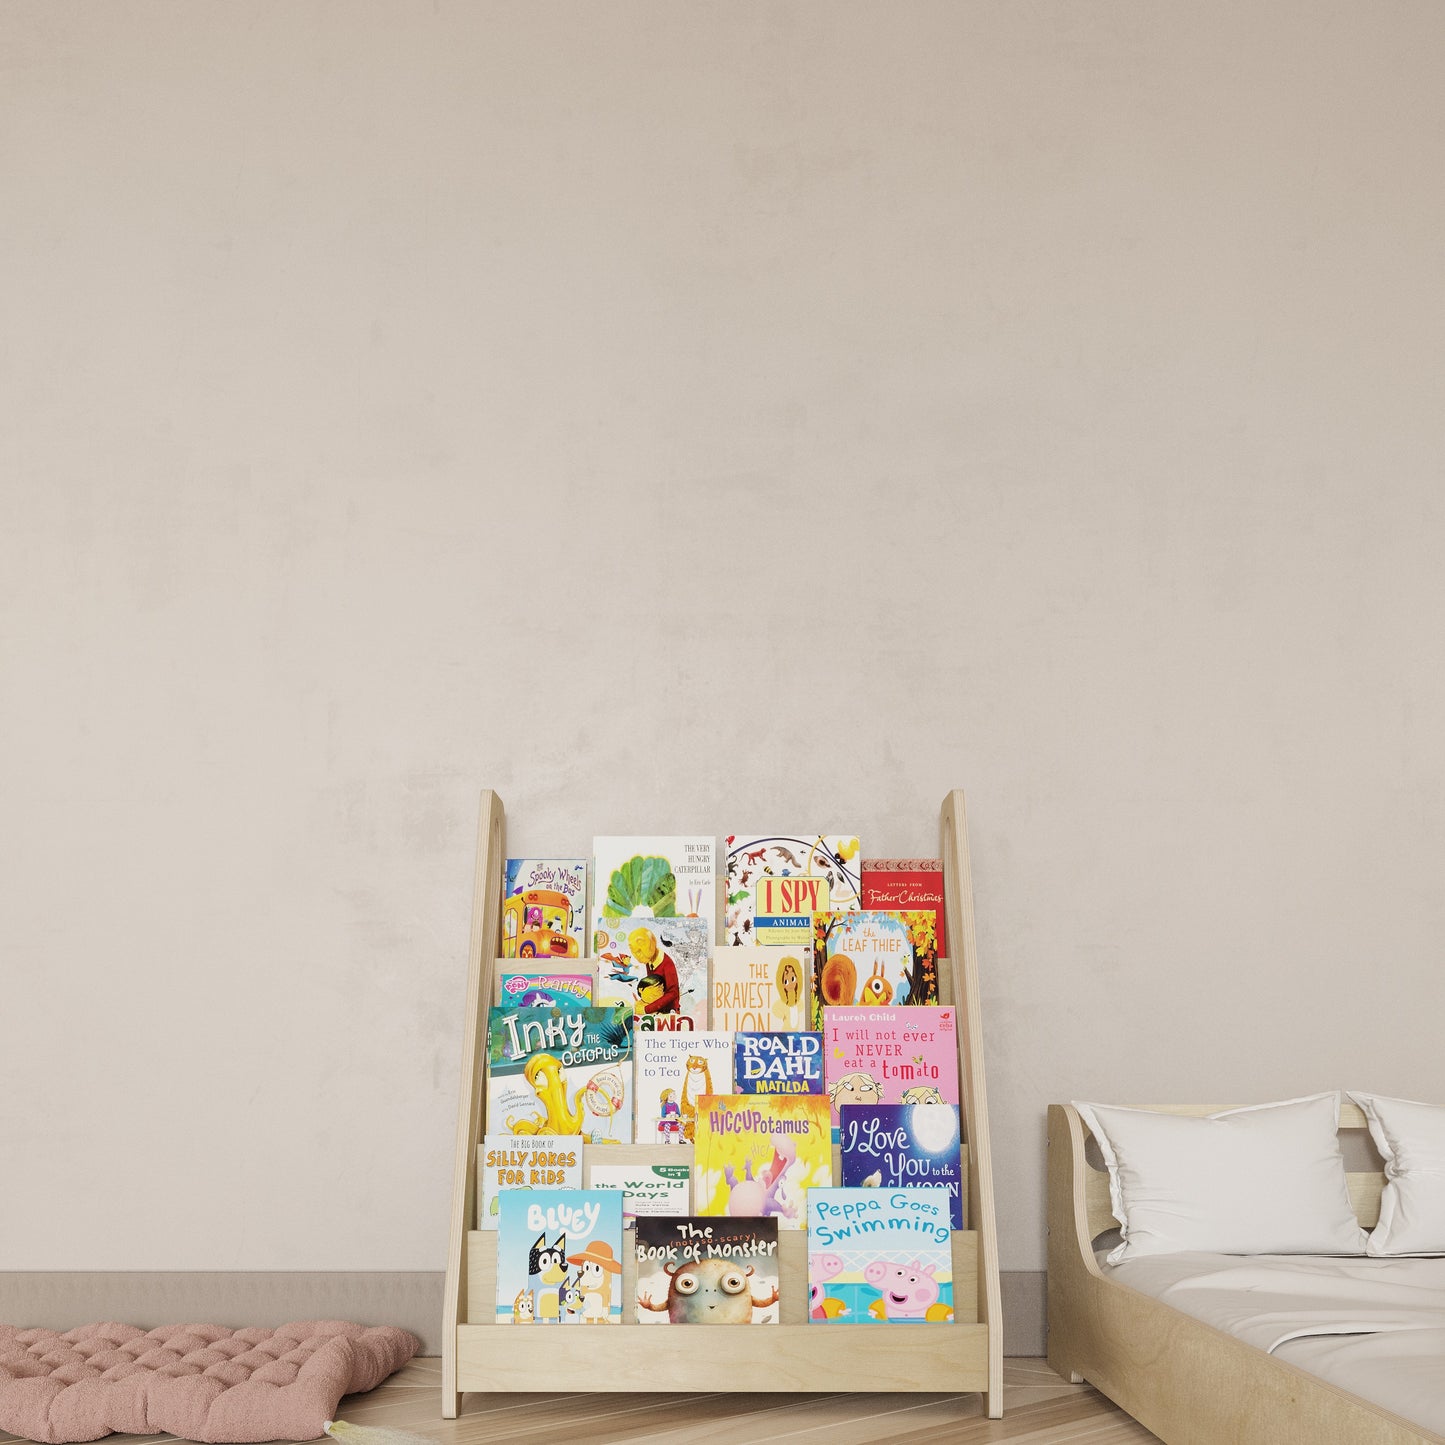 Montessori Style Bookshelf